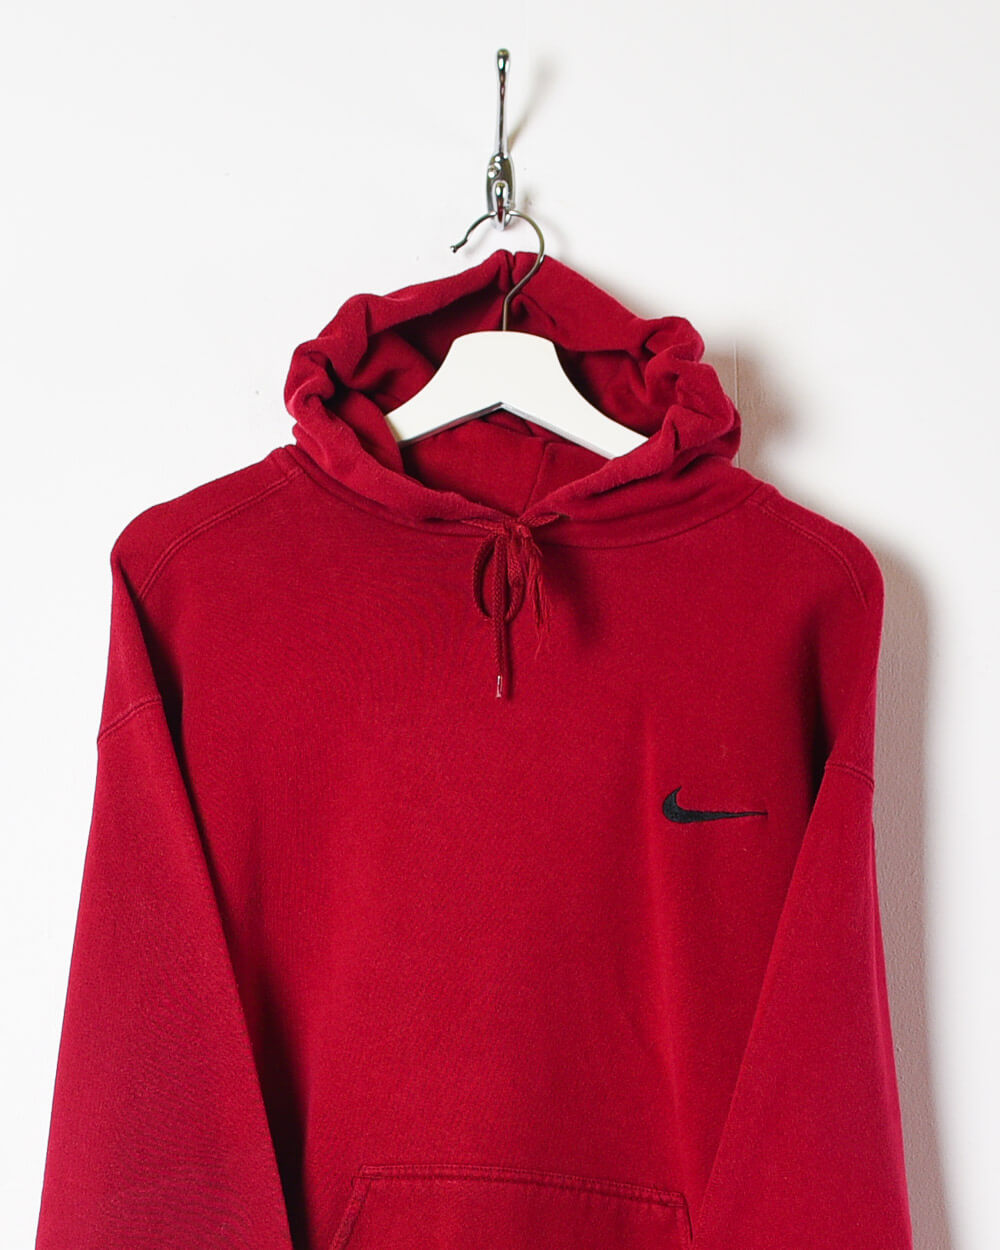 Red Nike Hoodie - Medium